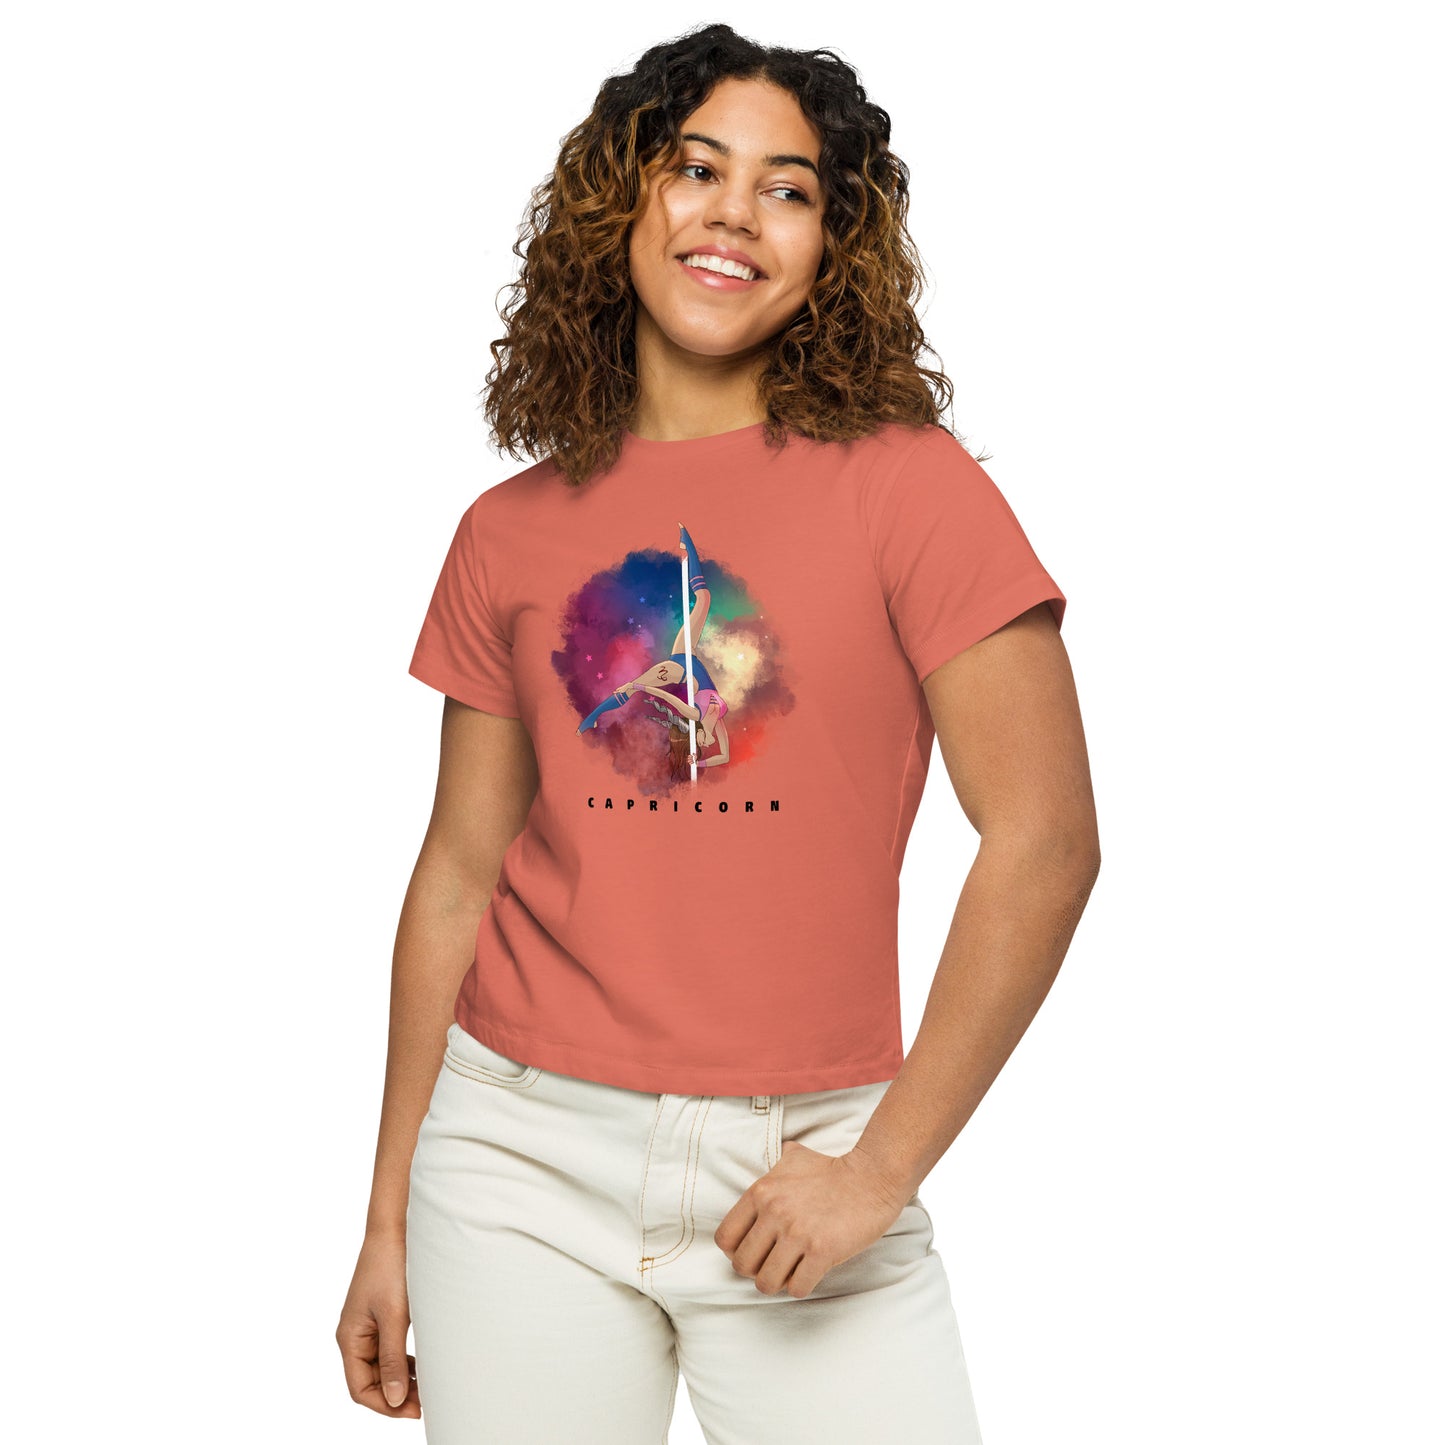 Capricorn - Women’s high-waisted t-shirt